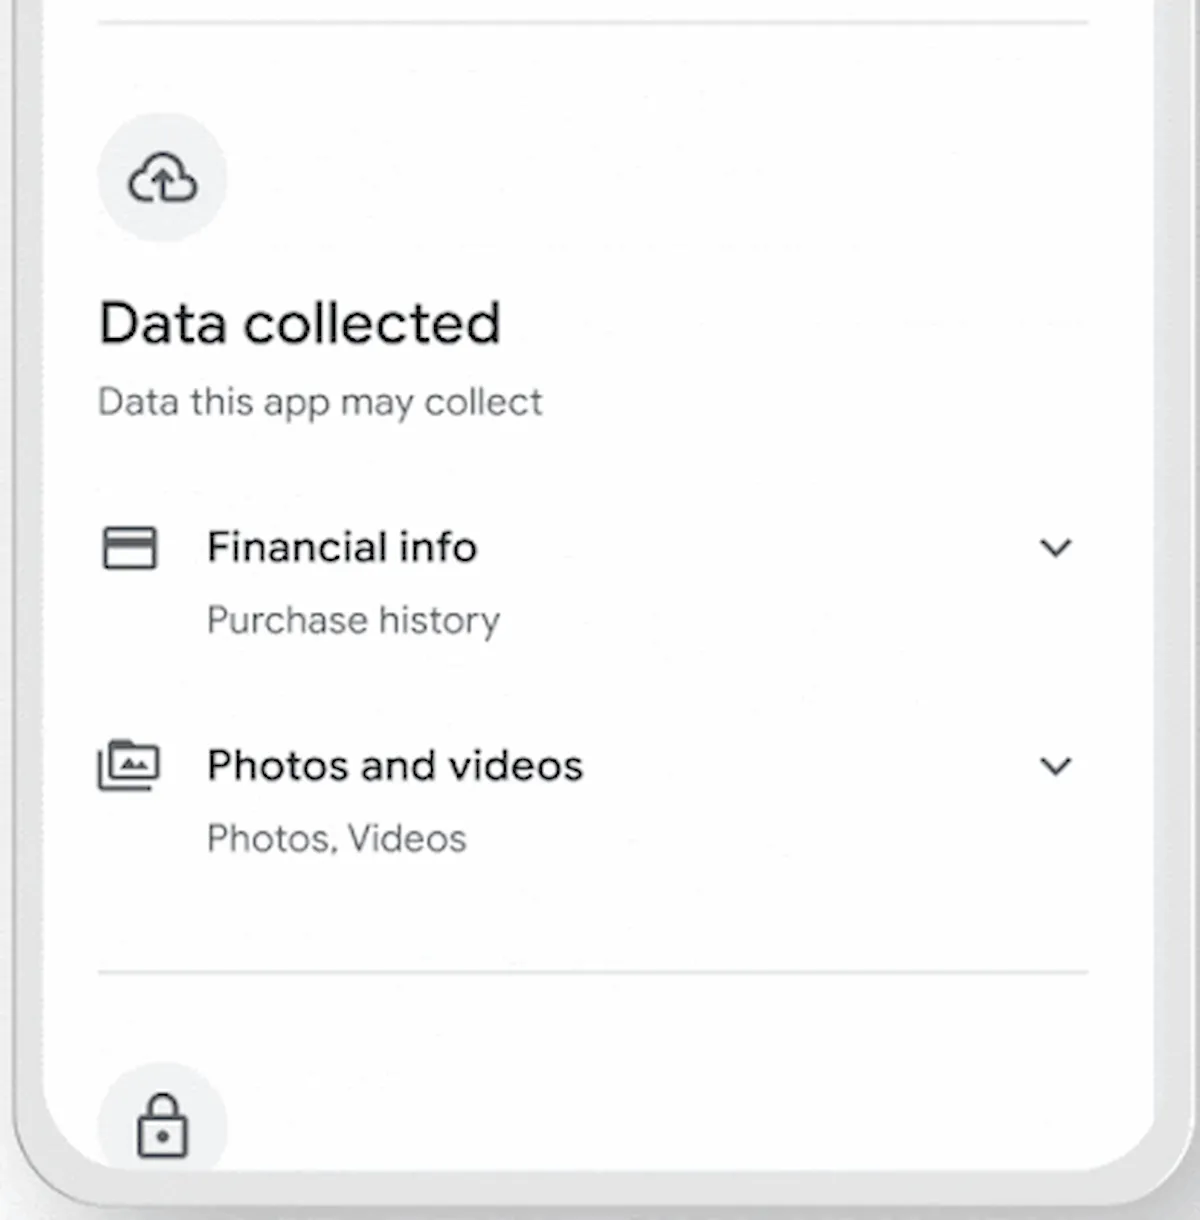 Google Play Store agora força apps a divulgar quais dados são coletados